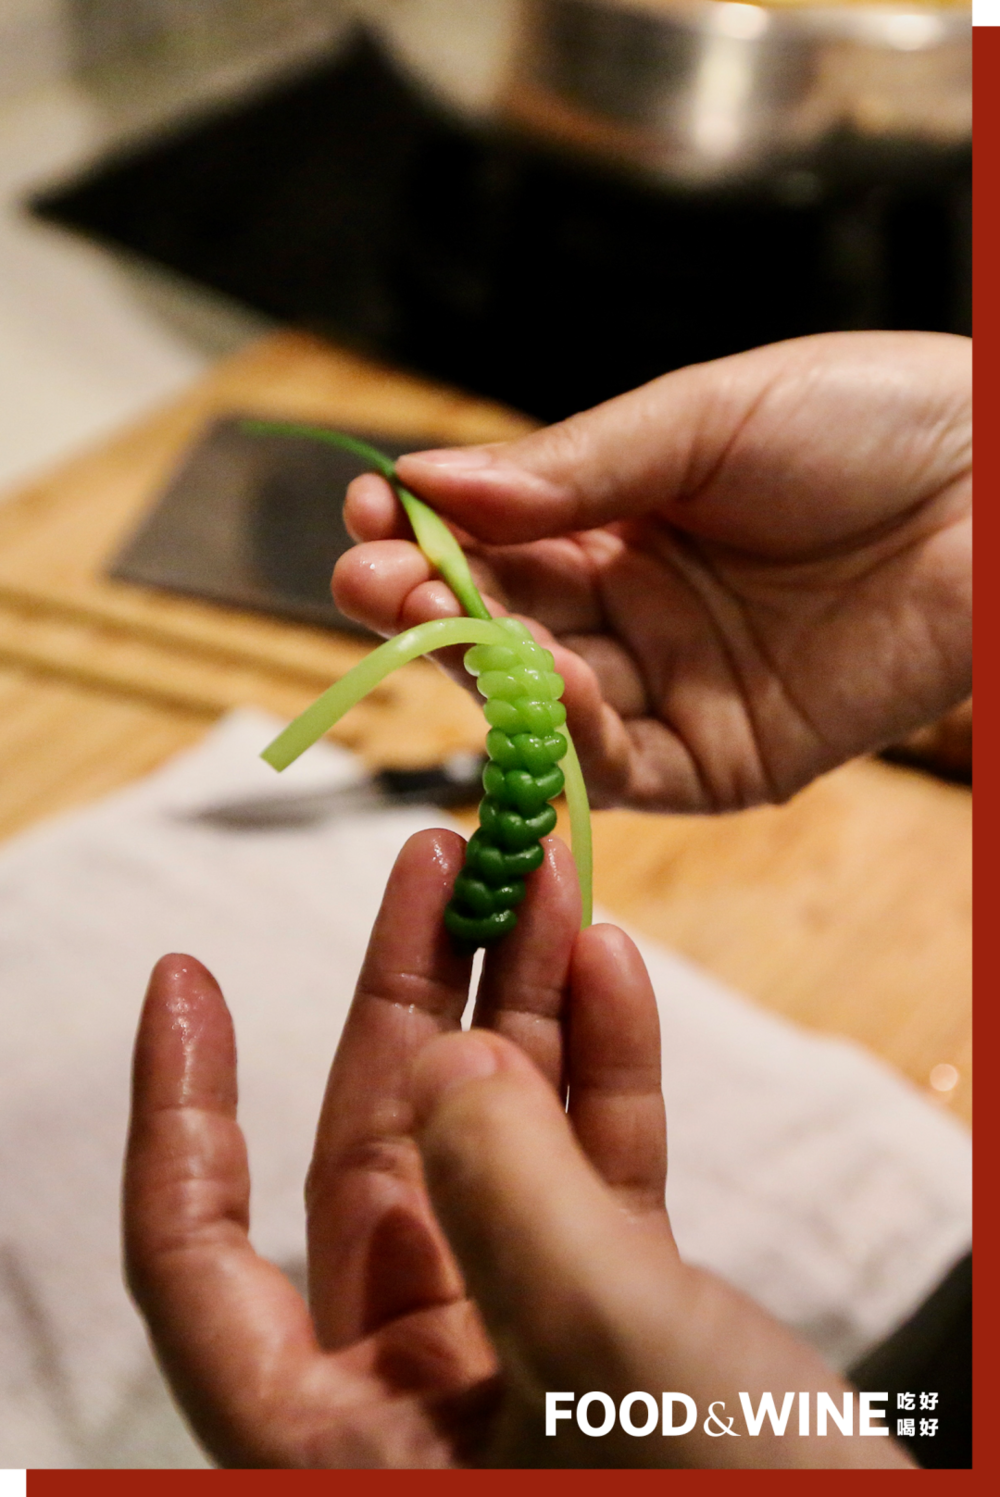 编织而成的十六凉碟之一 —— 玉簪菜花。<br>